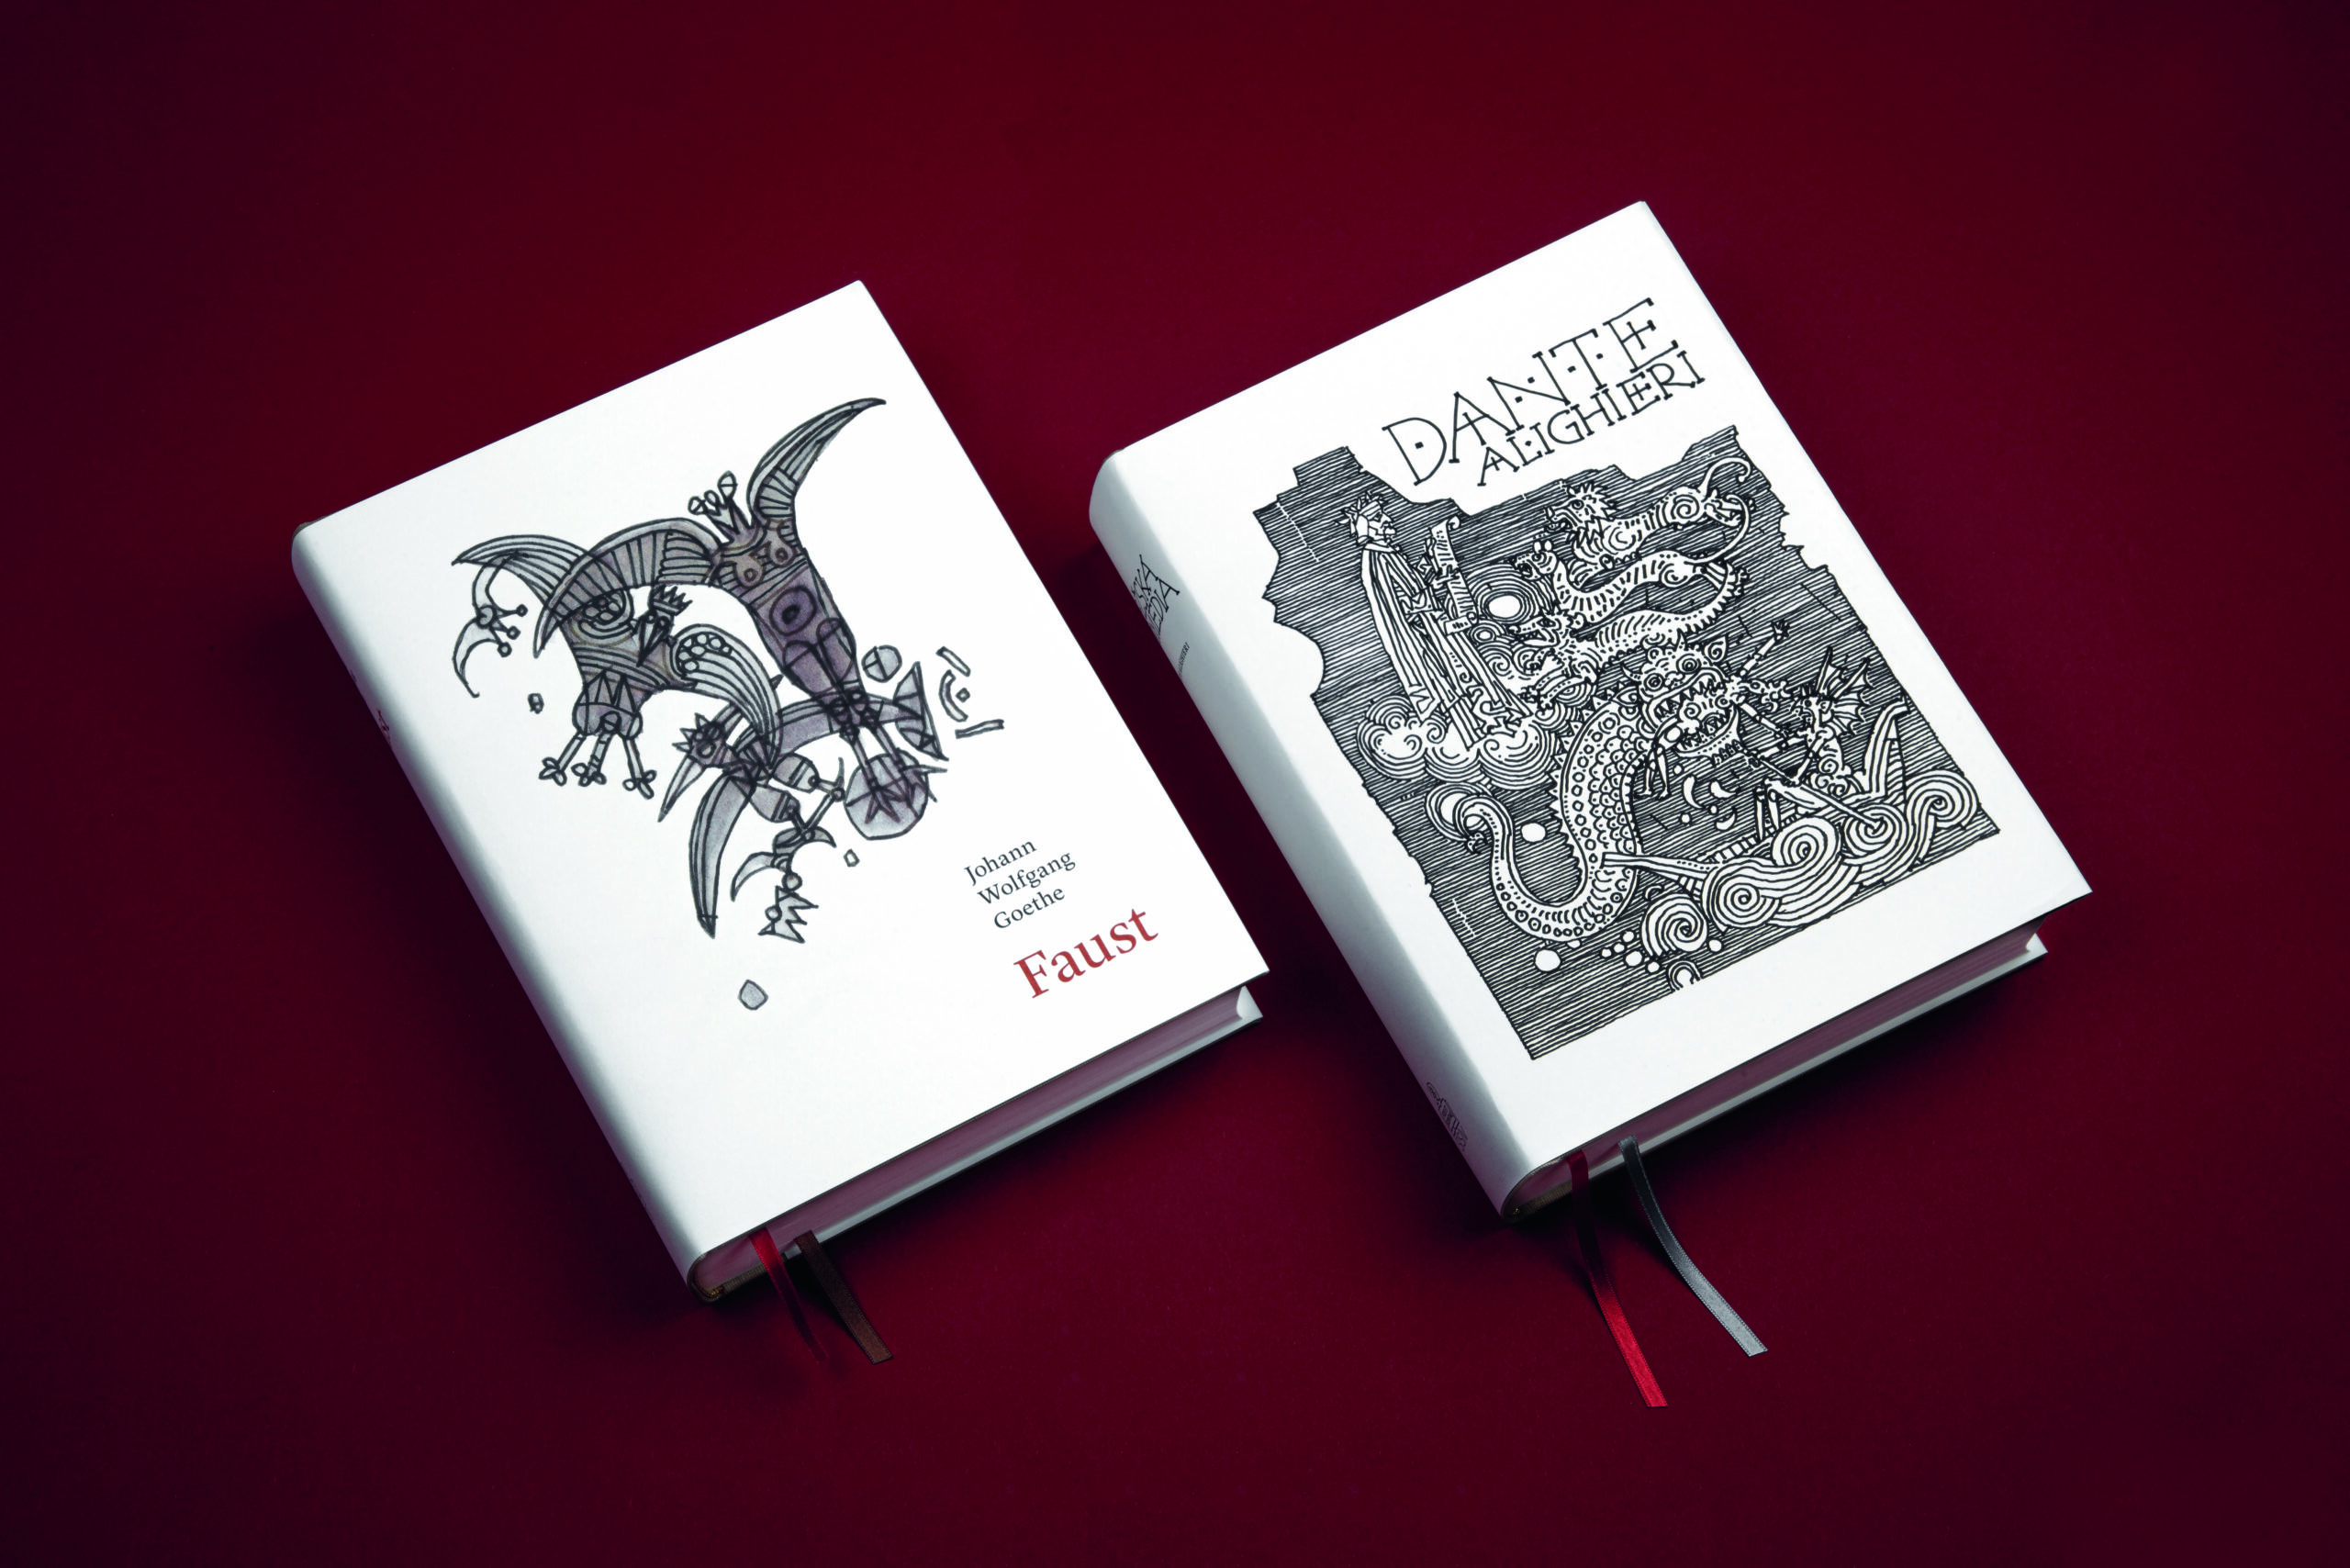 Dizajn a typografická úprava kníh Faust, 2018 a Božská komédia, vydavateľstvo Spolok svätého Vojtecha, 2019.